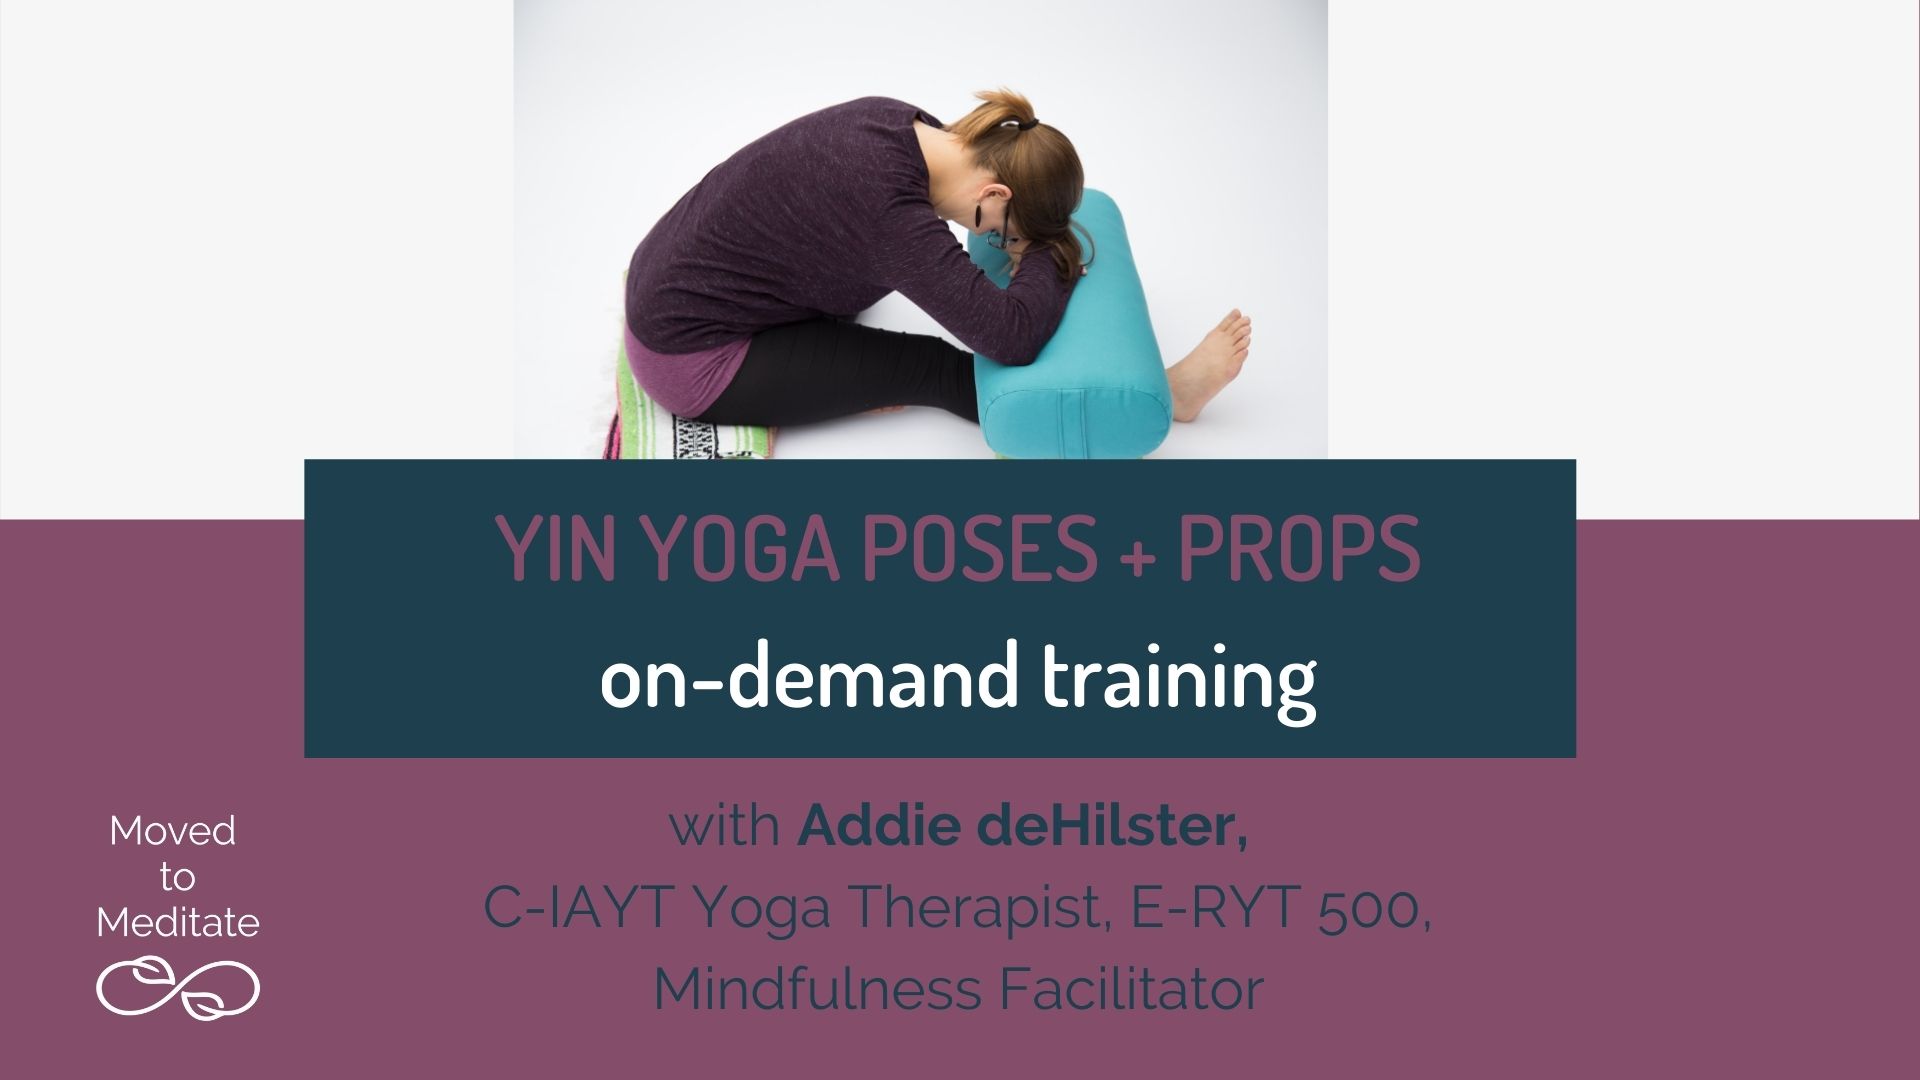 Using Props and Modifications in Yin Yoga - Shanti Atma Yoga : Yin